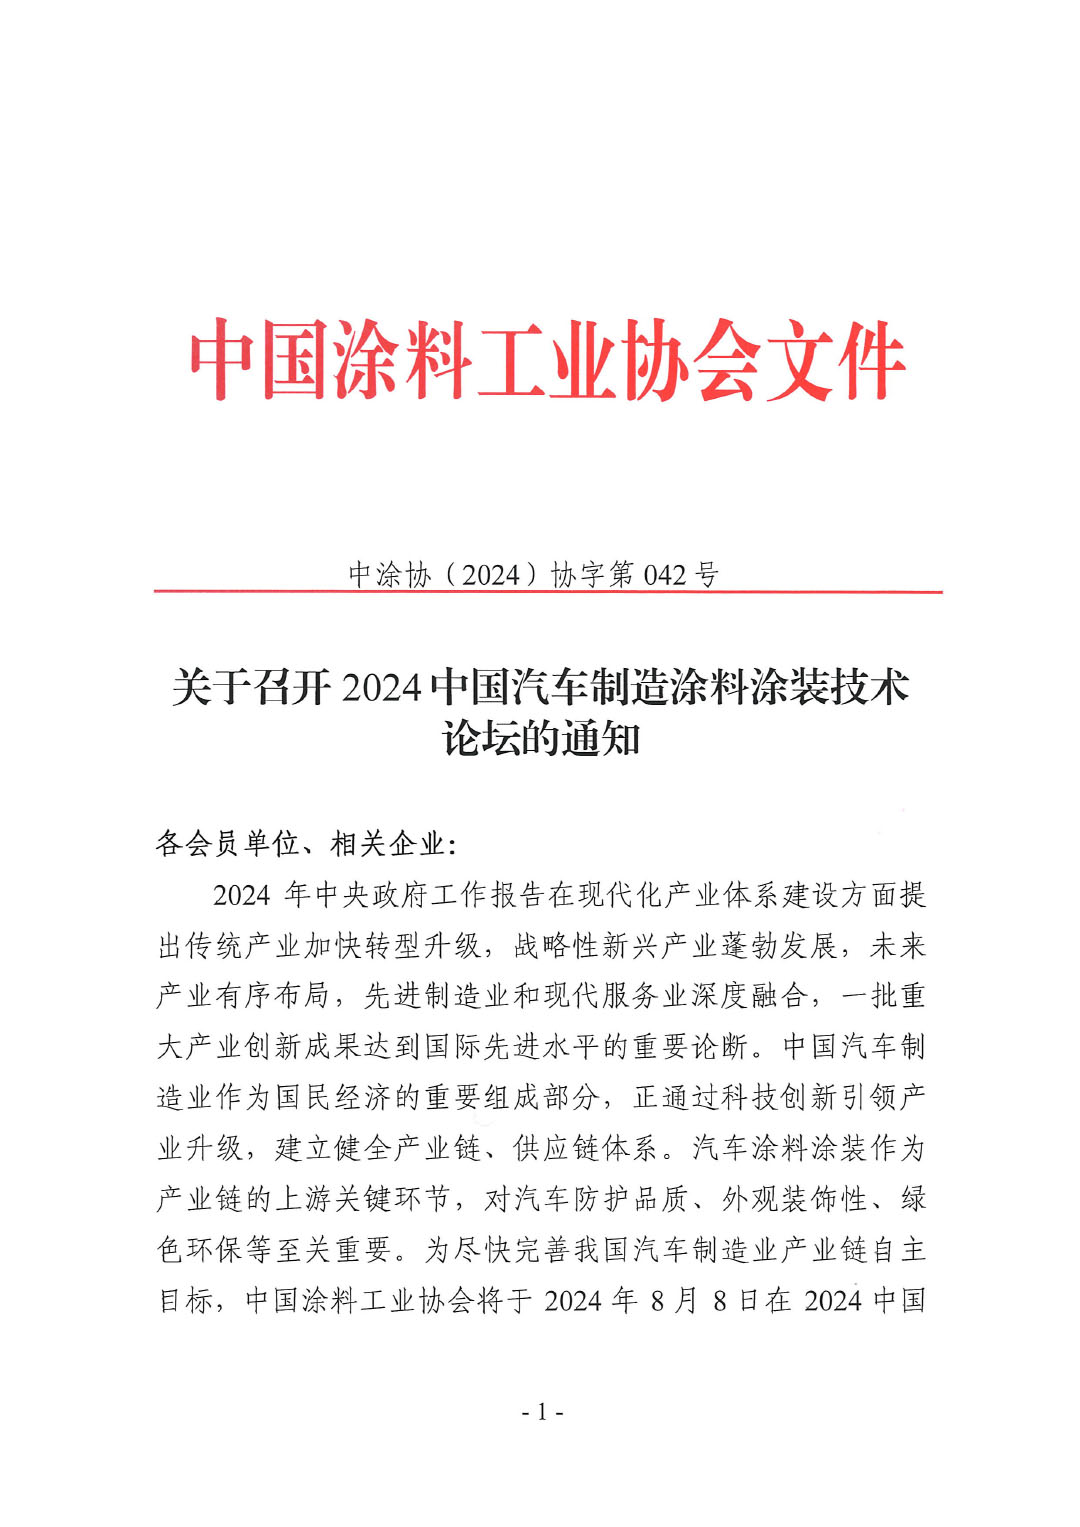 关于召开2024中国汽车制造涂料涂装技术论坛的通知-1